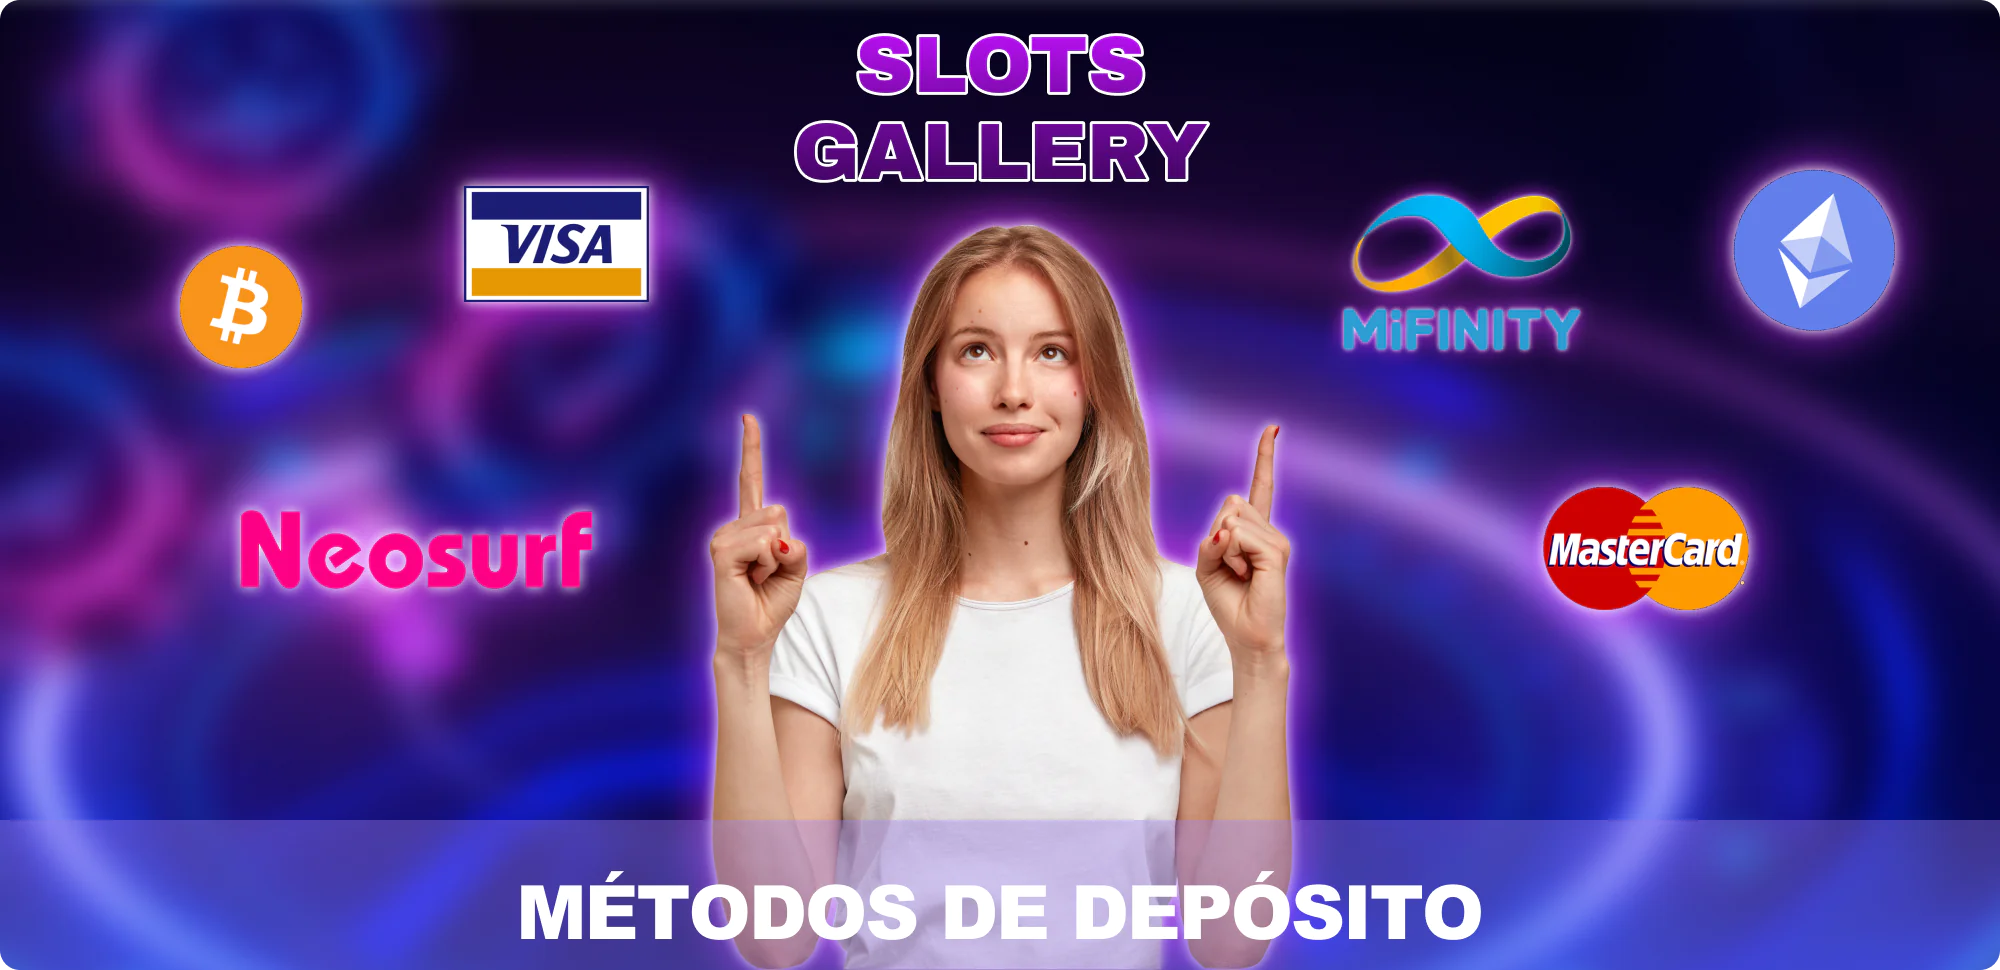 Métodos de reabastecimento no site da Slots Gallery disponíveis para jogadores do Brasil